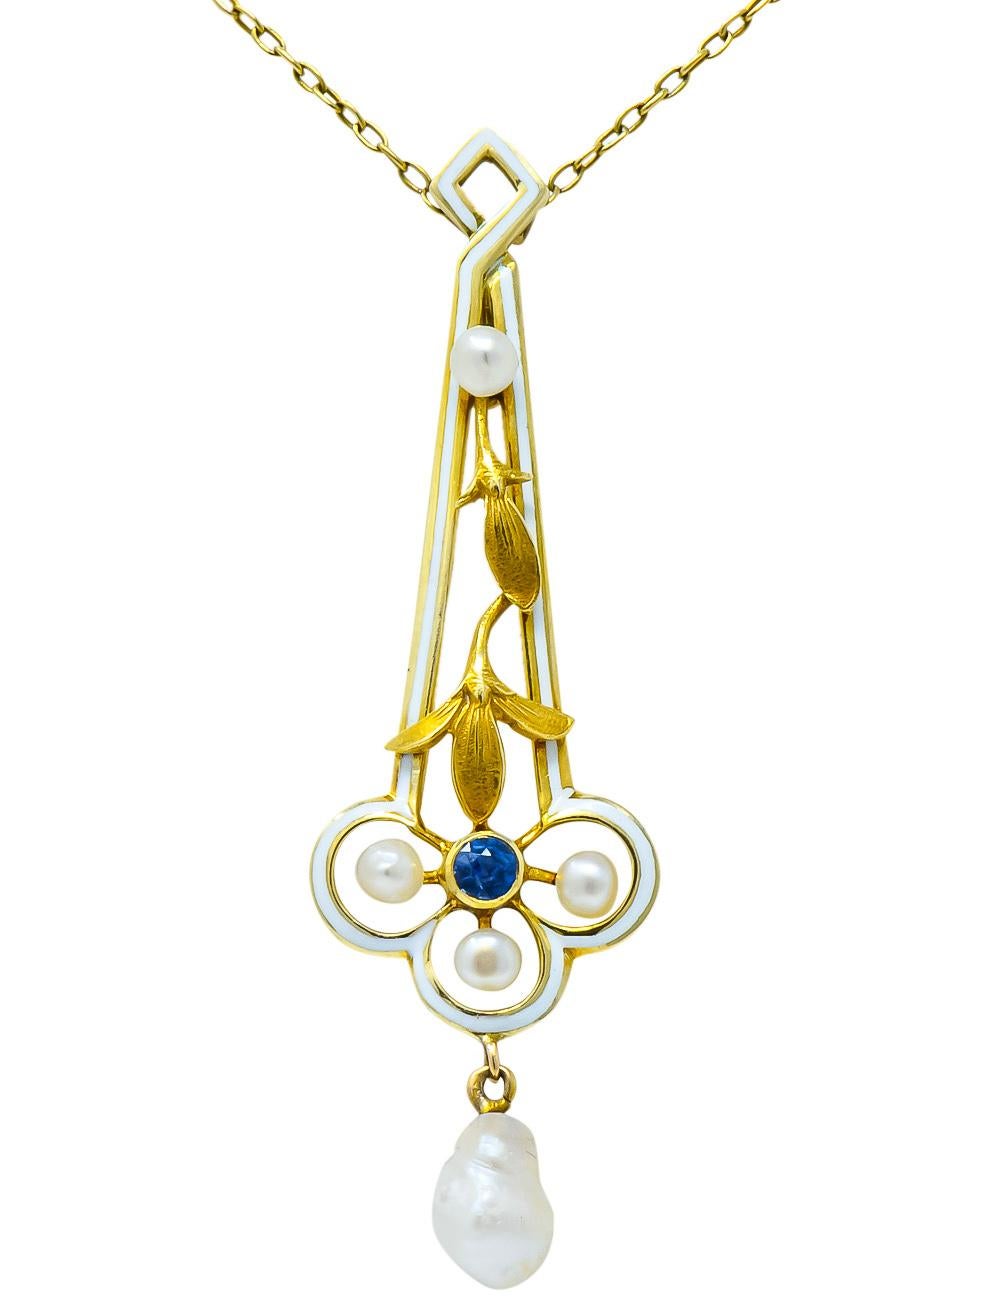 A.J. Hedges & Co. 1905 Art Nouveau Enamel Sapphire Pearl 14 Karat Gold Necklace In Excellent Condition In Philadelphia, PA